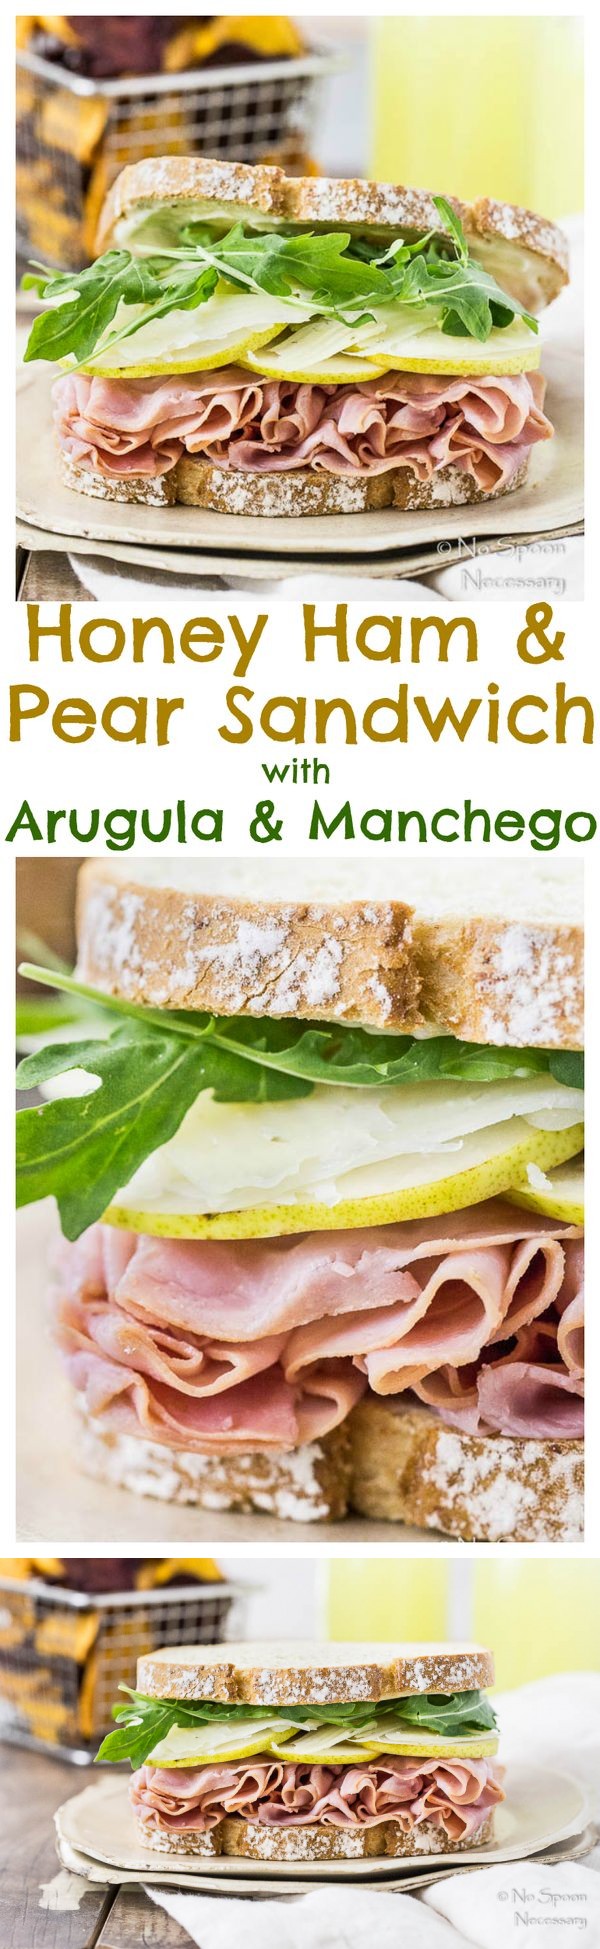 Ham & Pear Sandwich with Arugula & Manchego